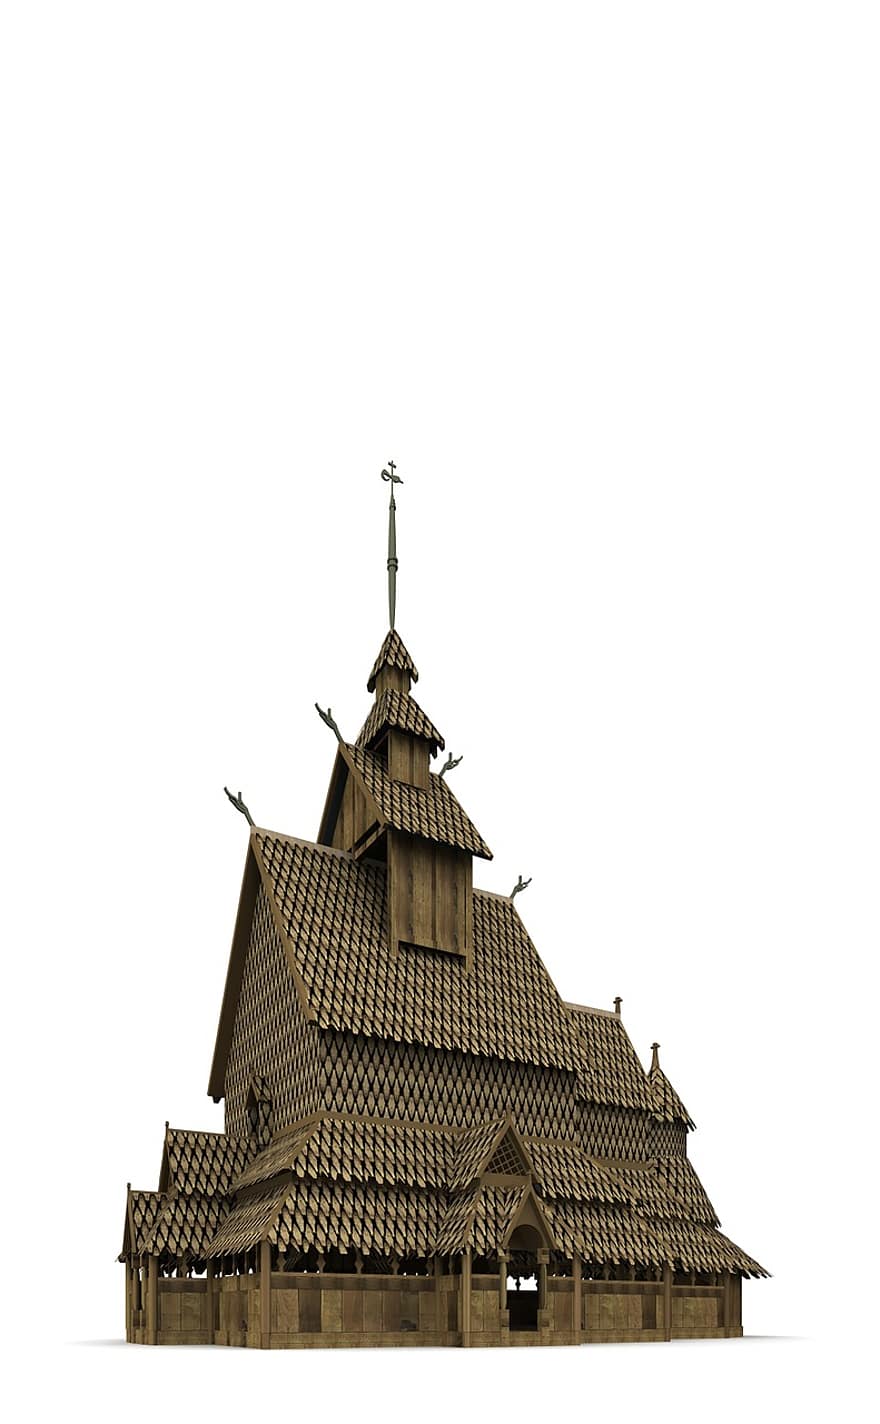 staafkerk, Noorwegen, architectuur, gebouw, kerk, interessante plaatsen, historisch, toeristen, aantrekkelijkheid, mijlpaal, facade